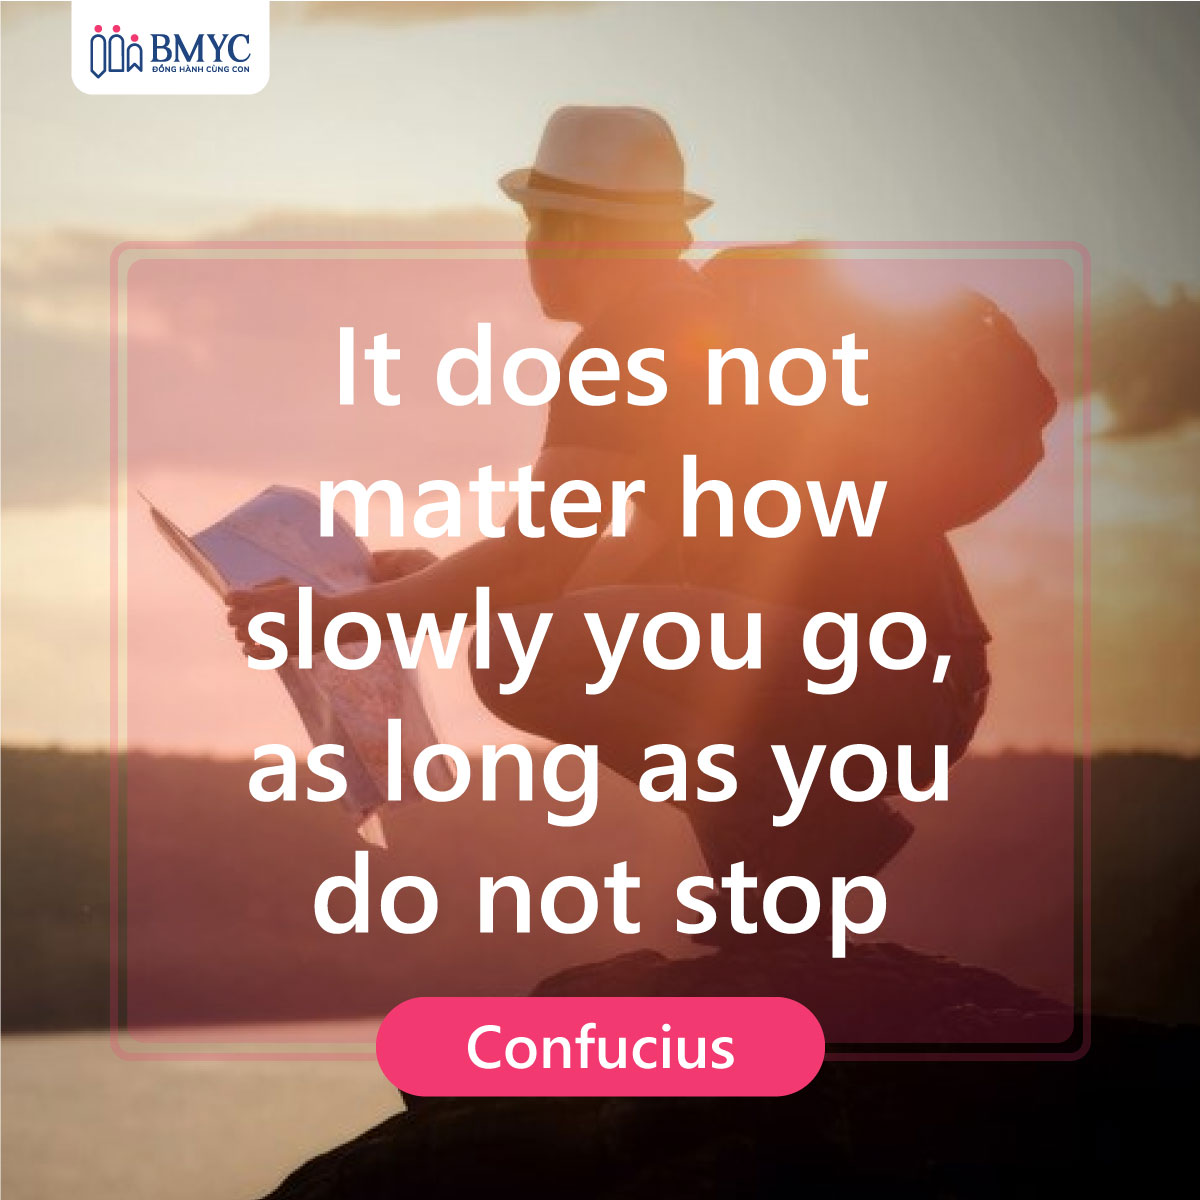 Cố lên trong tiếng Anh - Không quan trọng bạn đi chậm thế nào, miễn là bạn không dừng lại.